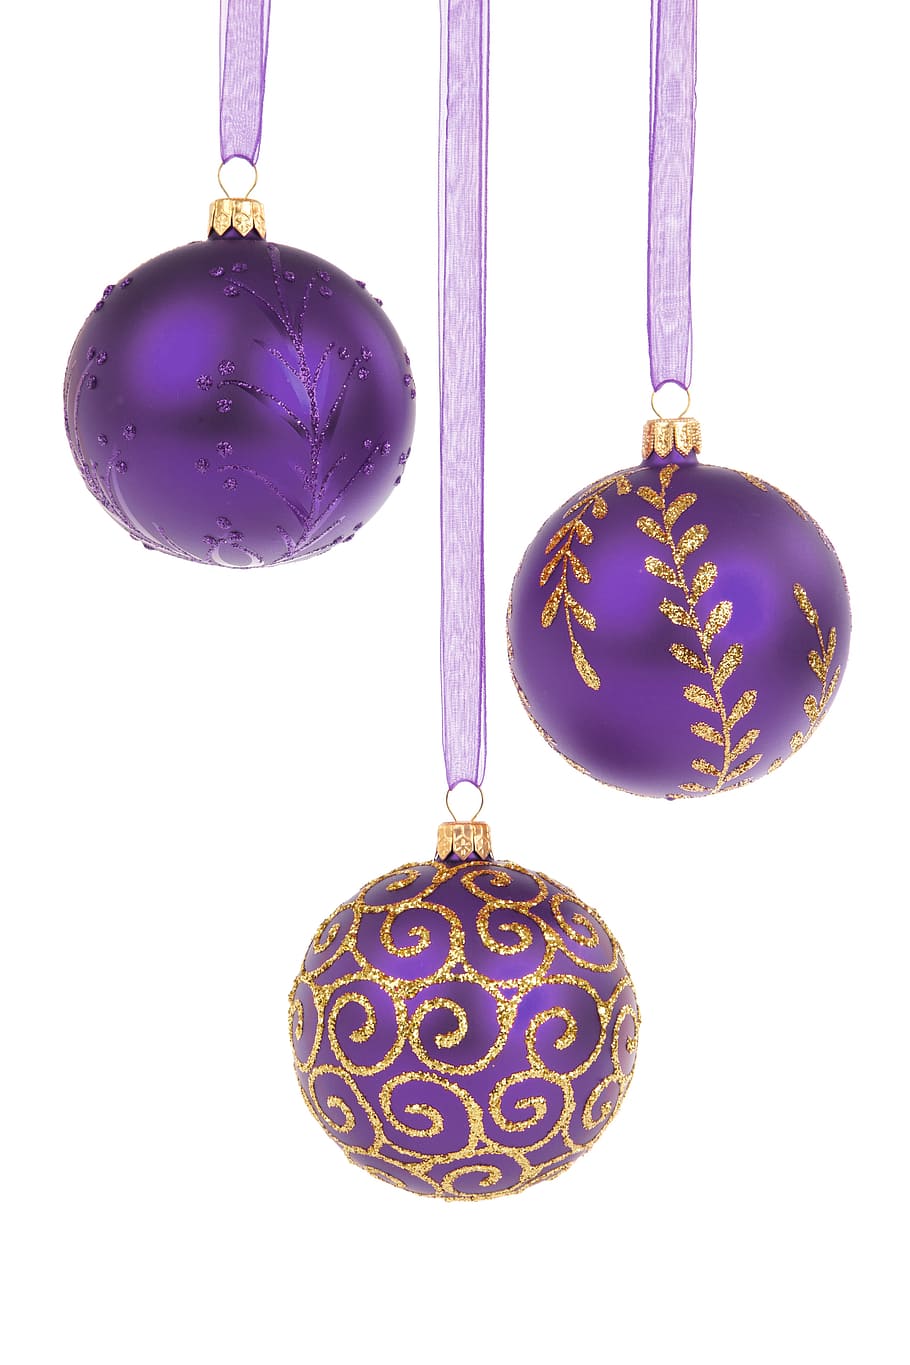 tres bolas de color púrpura, bola, bolas, adorno navideño, celebración, navidad, diciembre, decoración, decorativos, vidrio